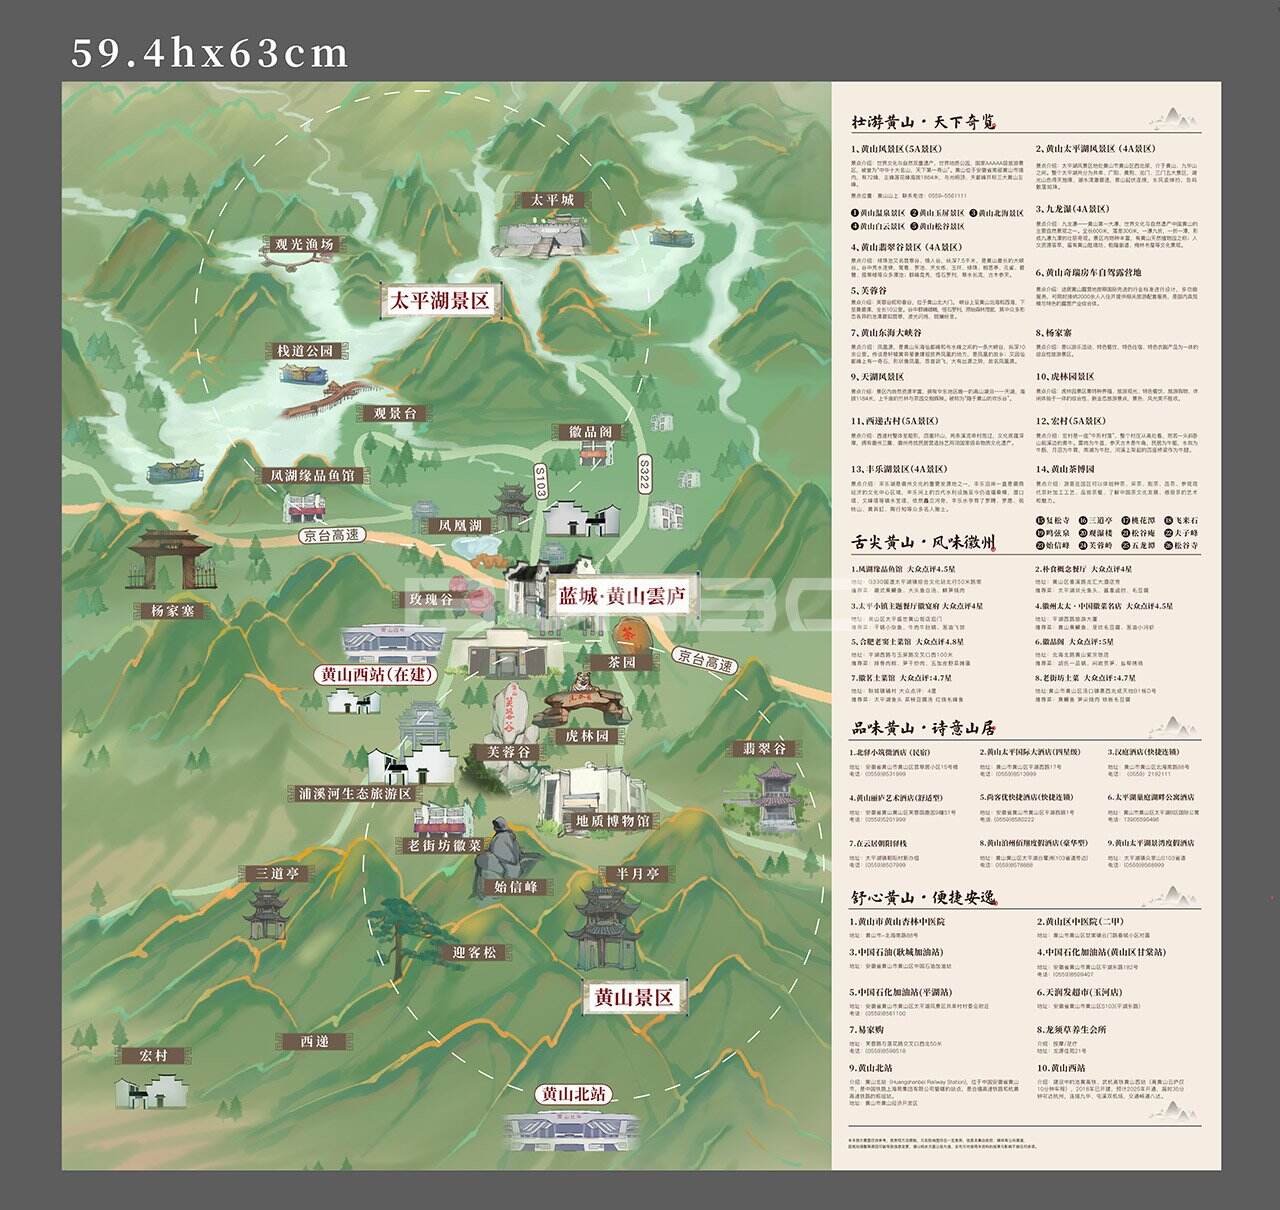 黄山旅游度假手绘地图本埠原创